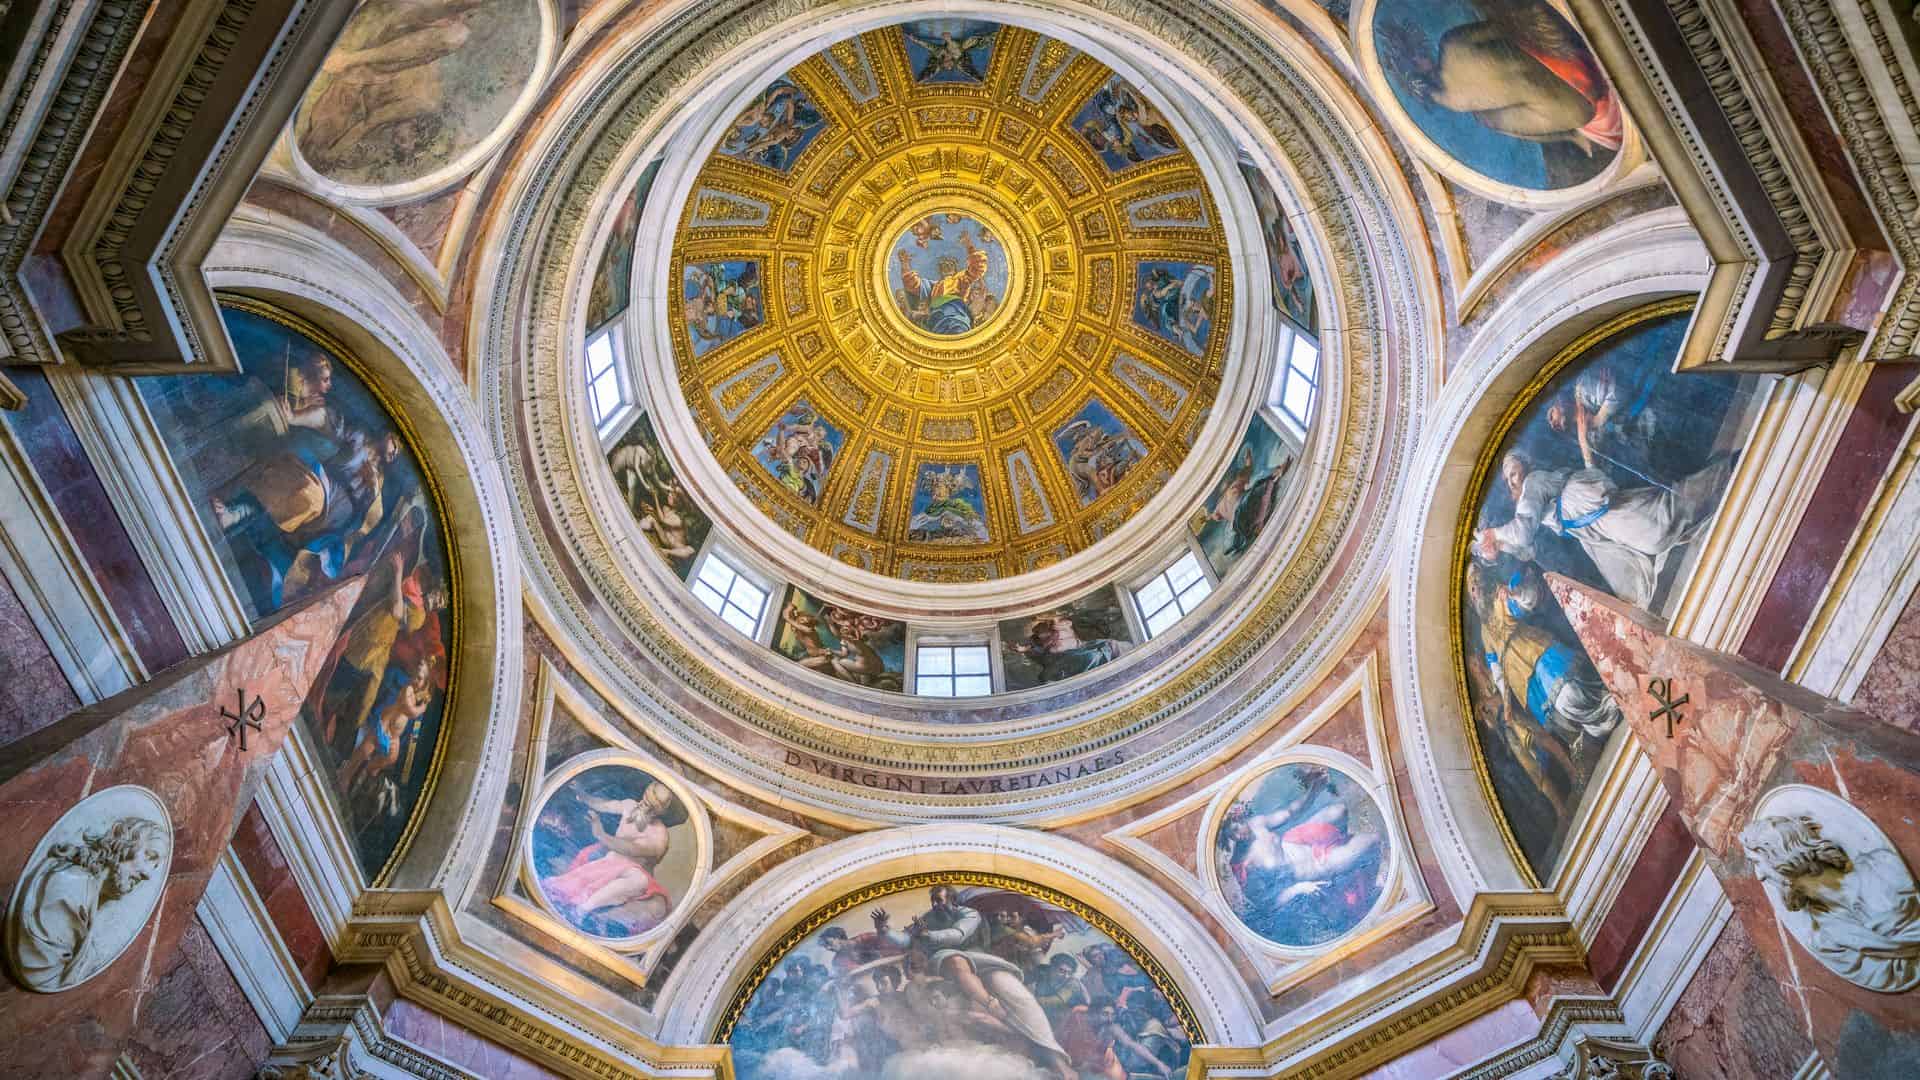 The beautiful Cappella Chigi designed by Raffaello, in the Basilica of Santa Maria del Popolo in Rome